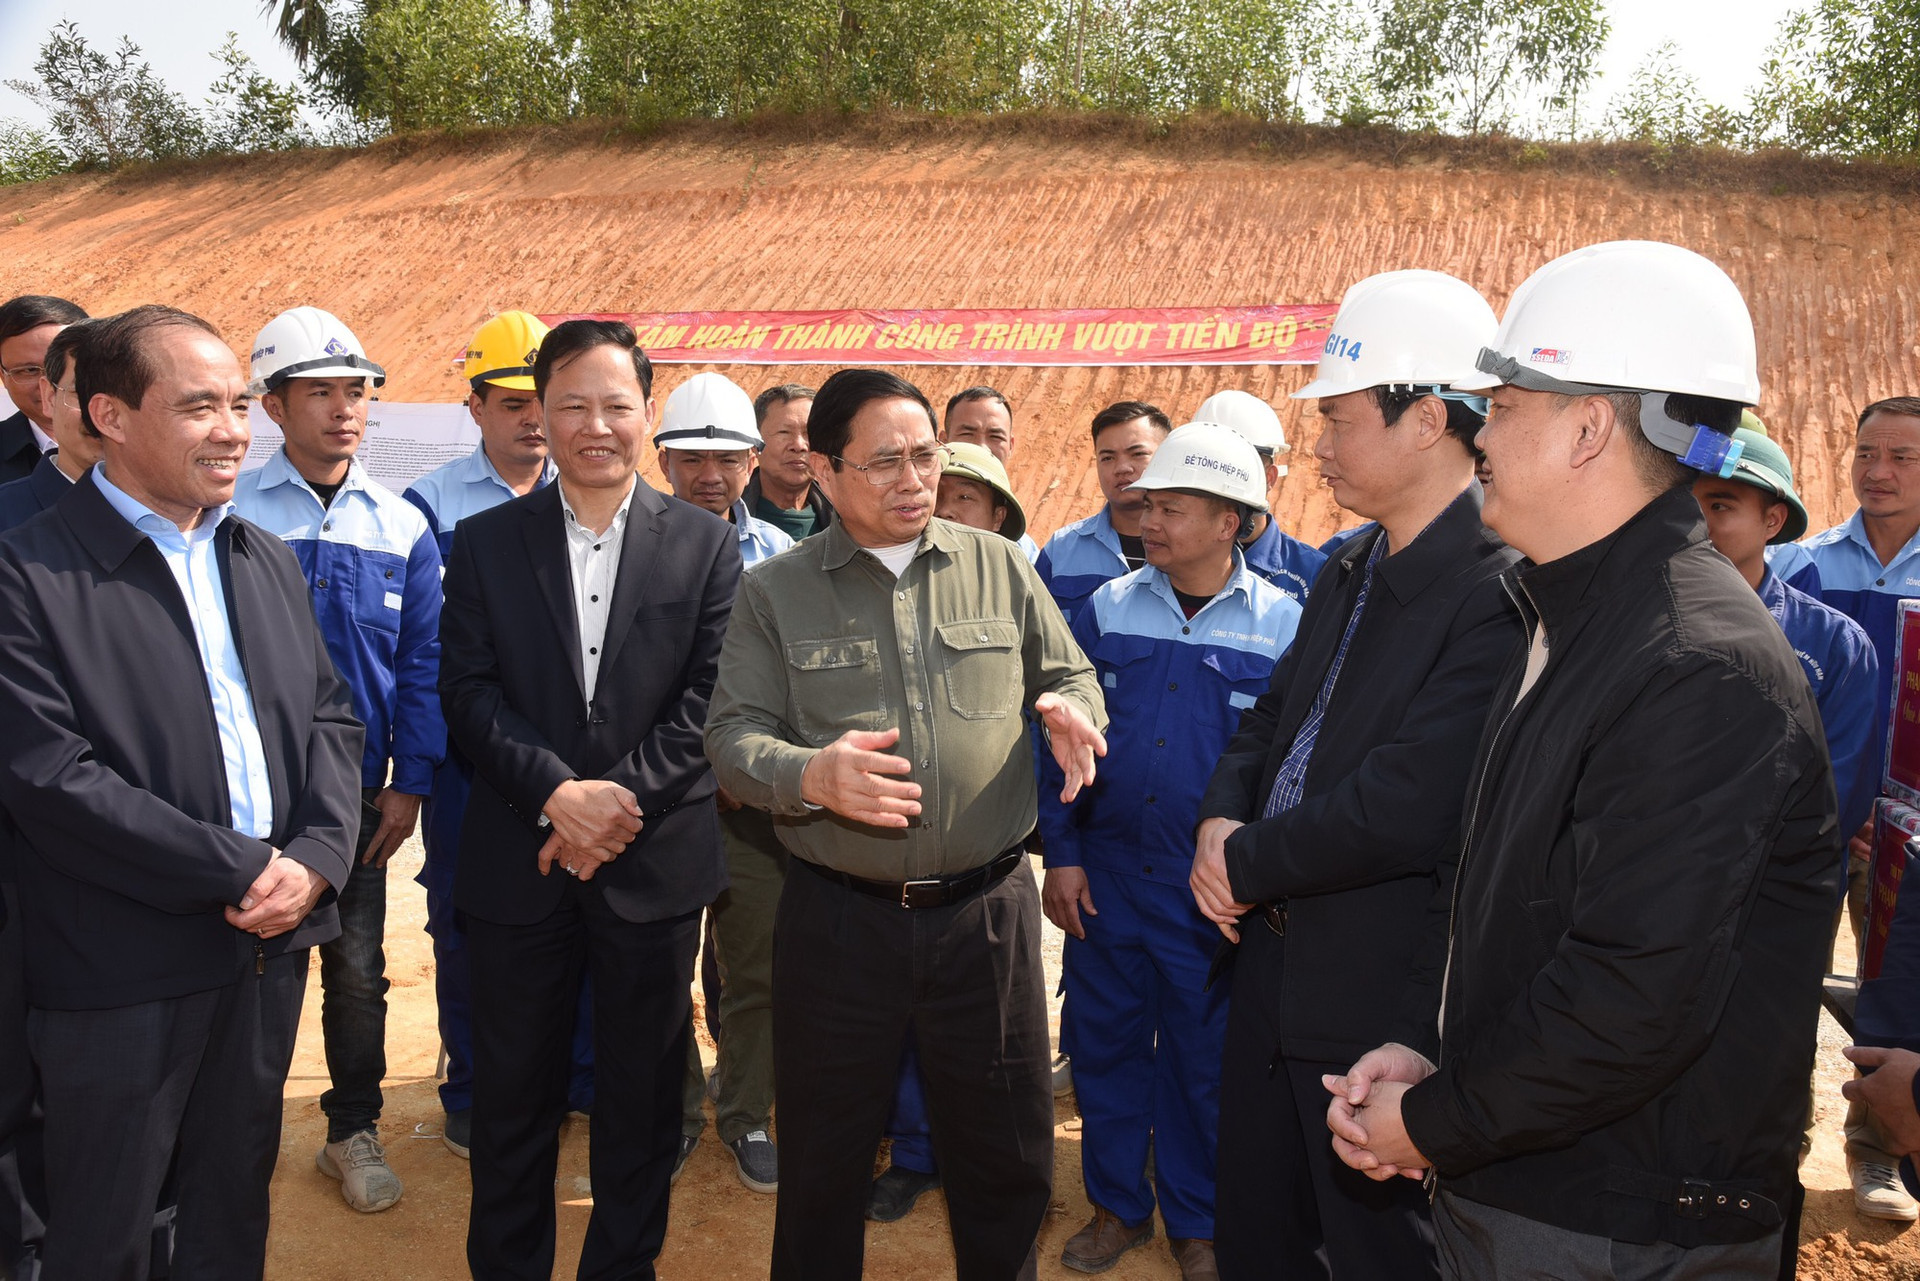 Thủ tướng kiểm tra, đôn đốc dự án cao tốc Tuyên Quang-Phú Thọ, chúc Tết công nhân và người dân khu tái định cư - Ảnh 3.